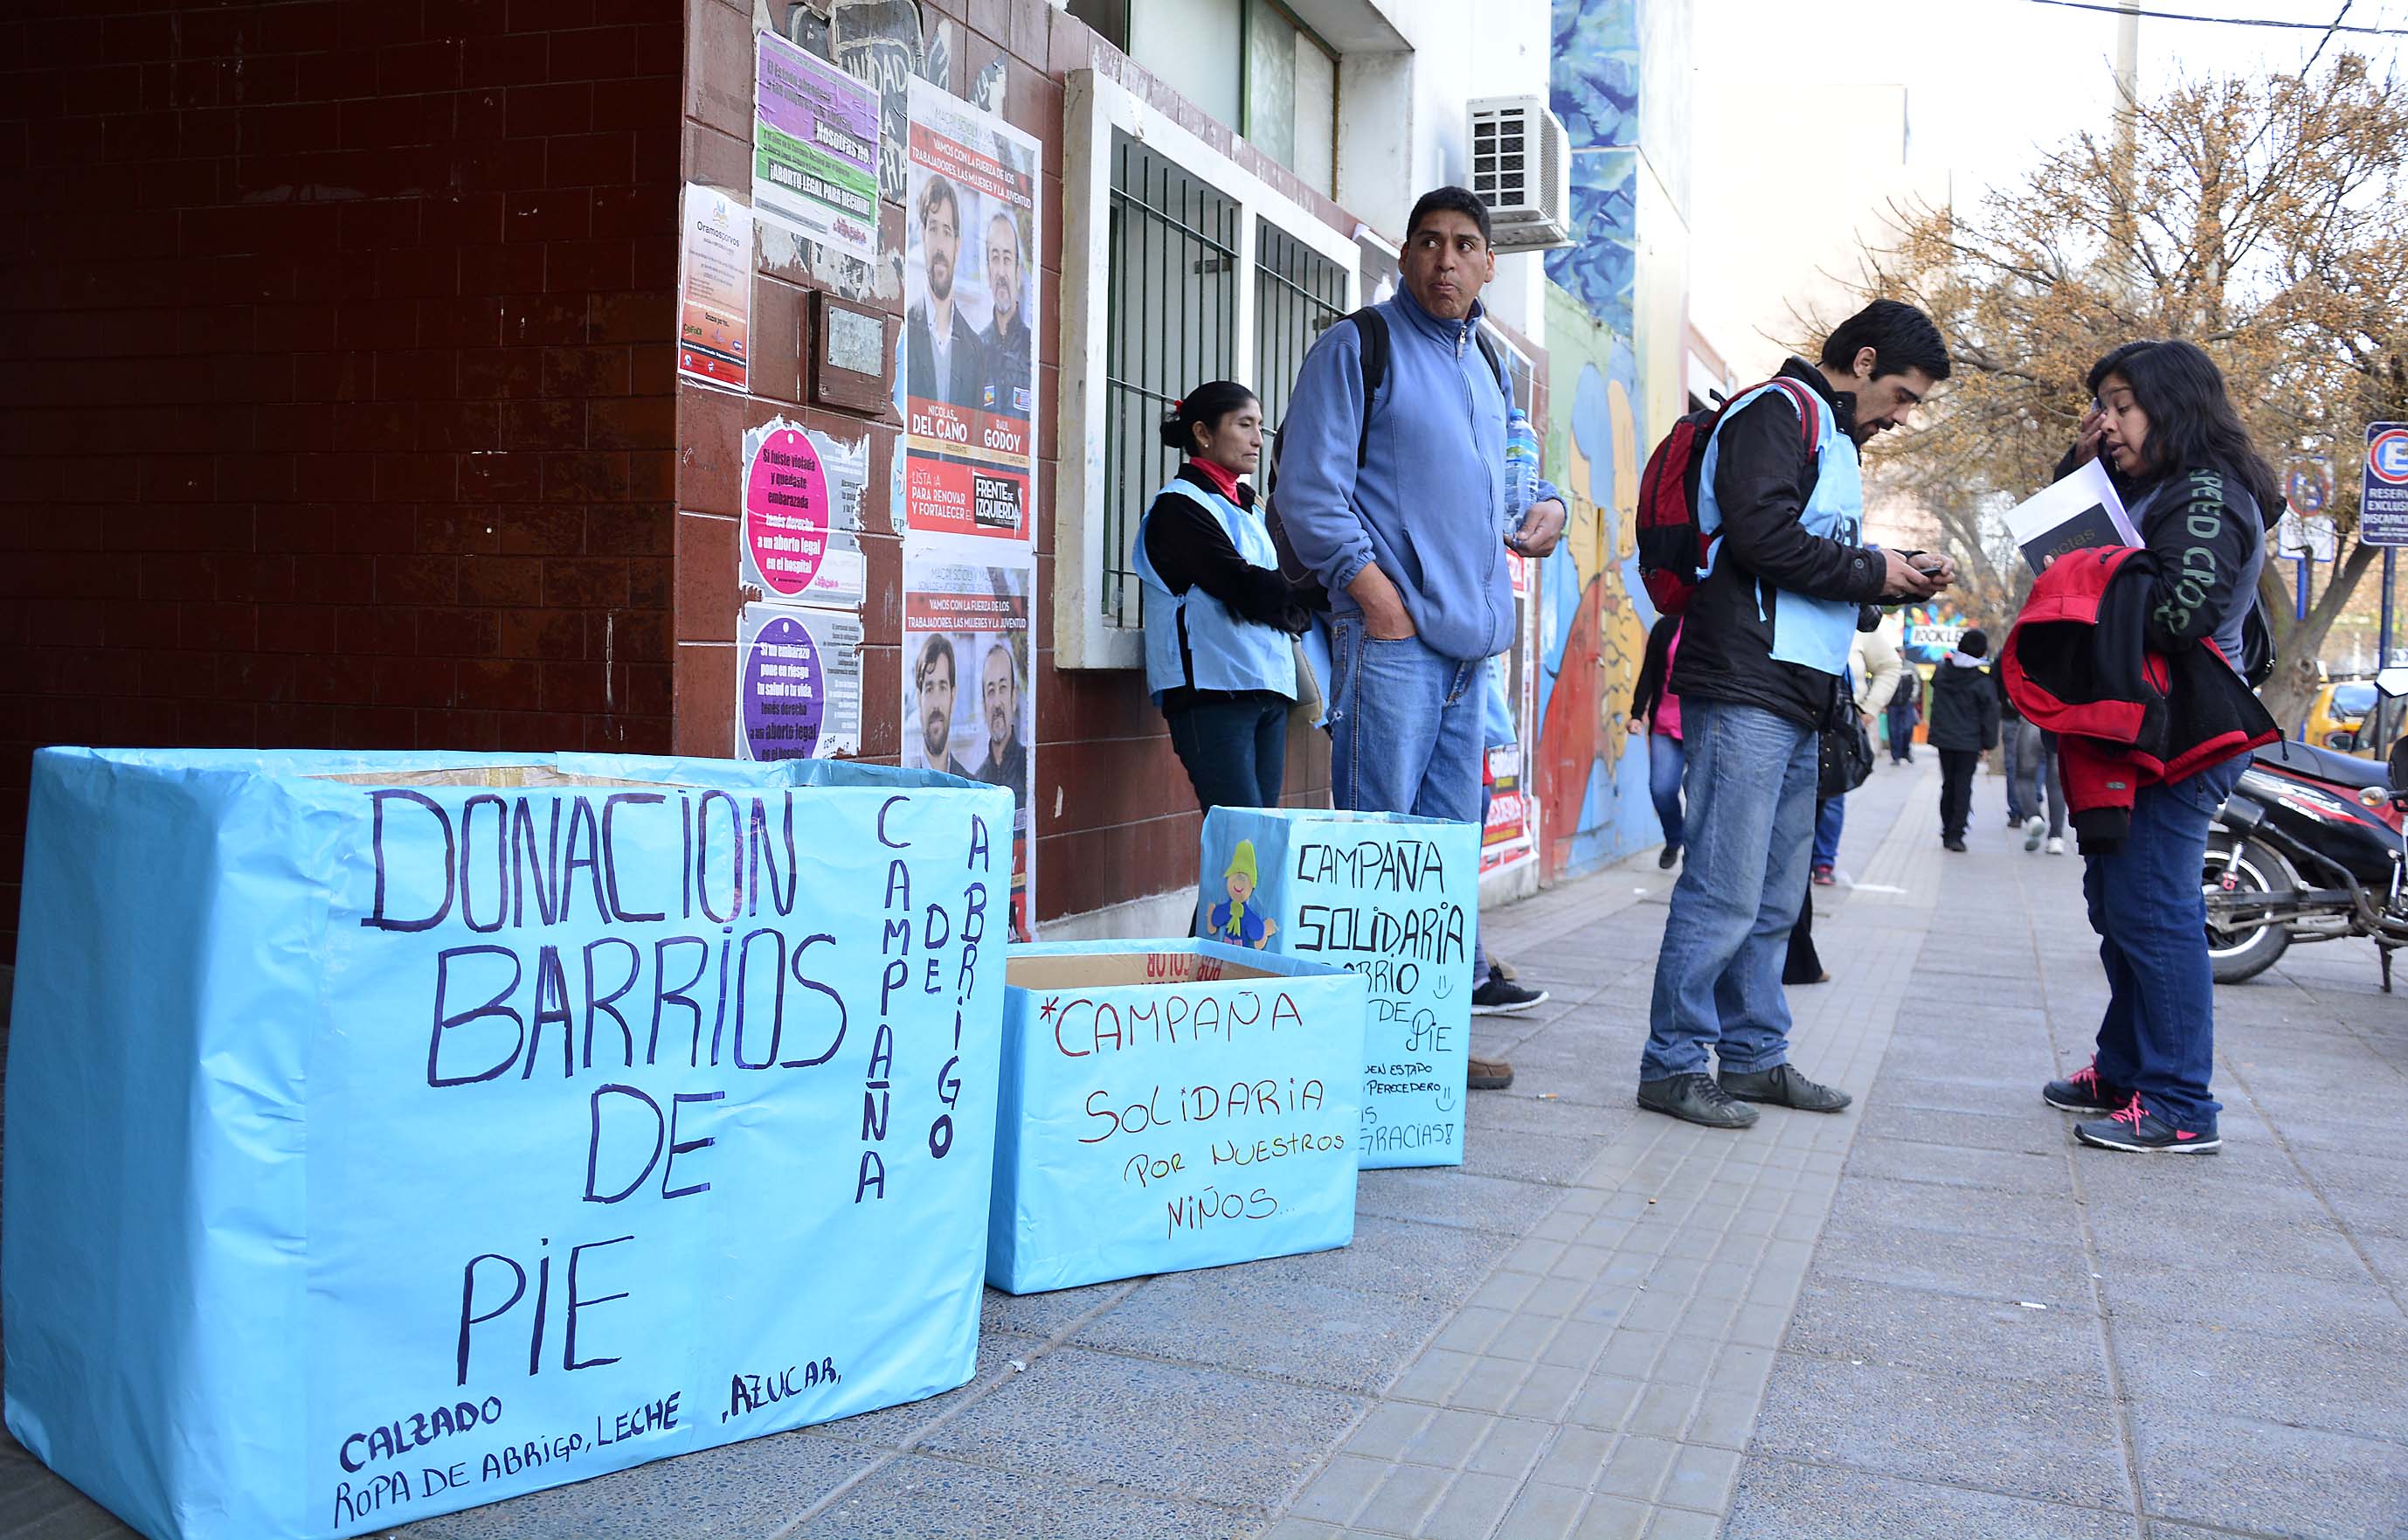 Barrios de Pie inicia una nueva campaña de donación d ejuguetes. Foto: Archivo